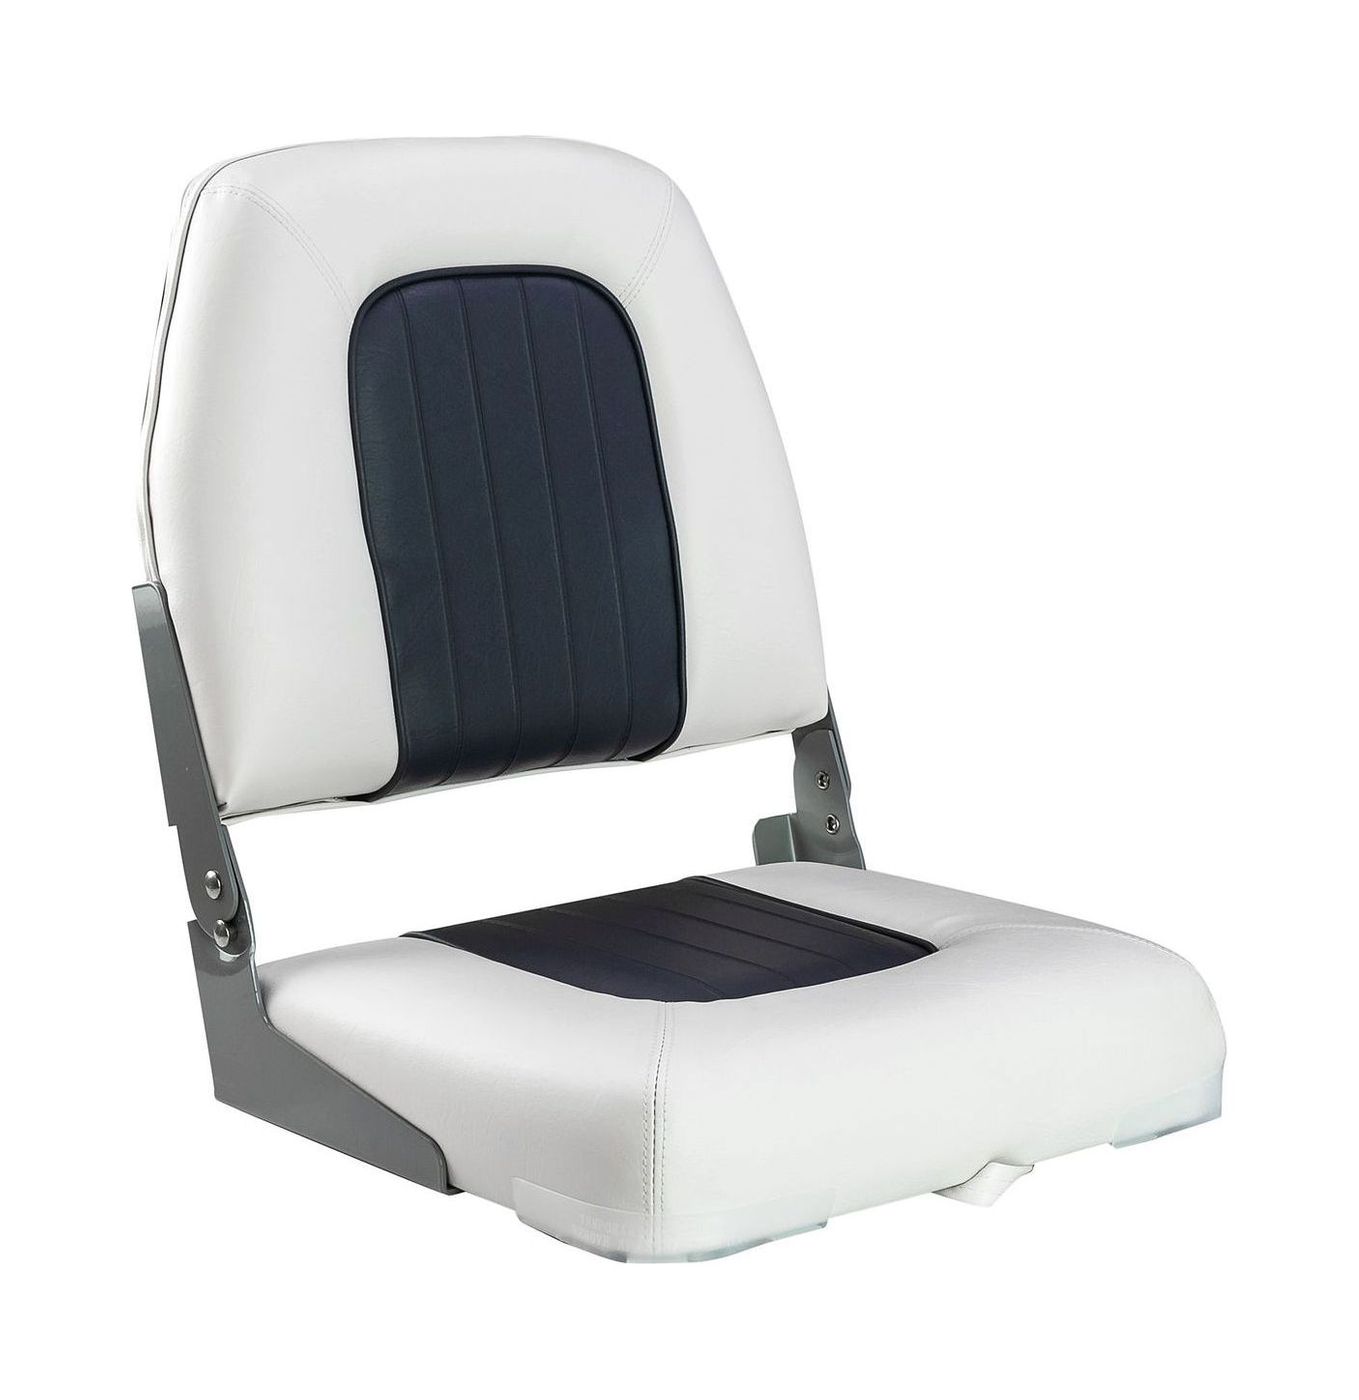 Кресло мягкое складное Deluxe, обивка винил, цвет белый/угольный, Marine Rocket 75137WC-MR deluxe poncho salt кресло подвесное m